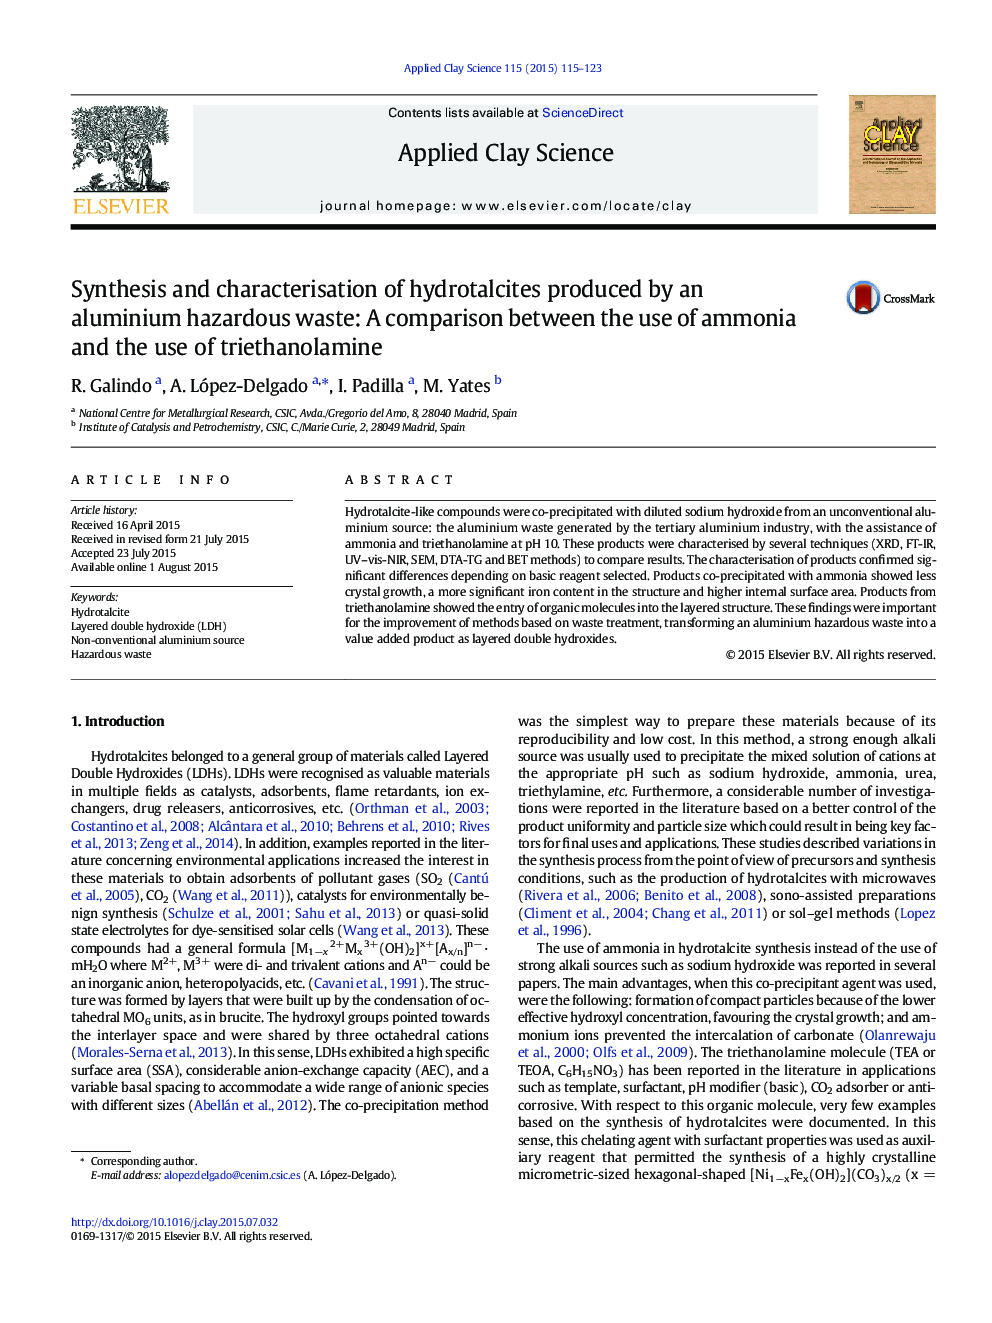 سنتز و مشخص کردن هیدرواللسیت های تولید شده توسط زباله های خطرناک آلومینیوم: مقایسه بین استفاده از آمونیاک و استفاده از تری اتانولامین 